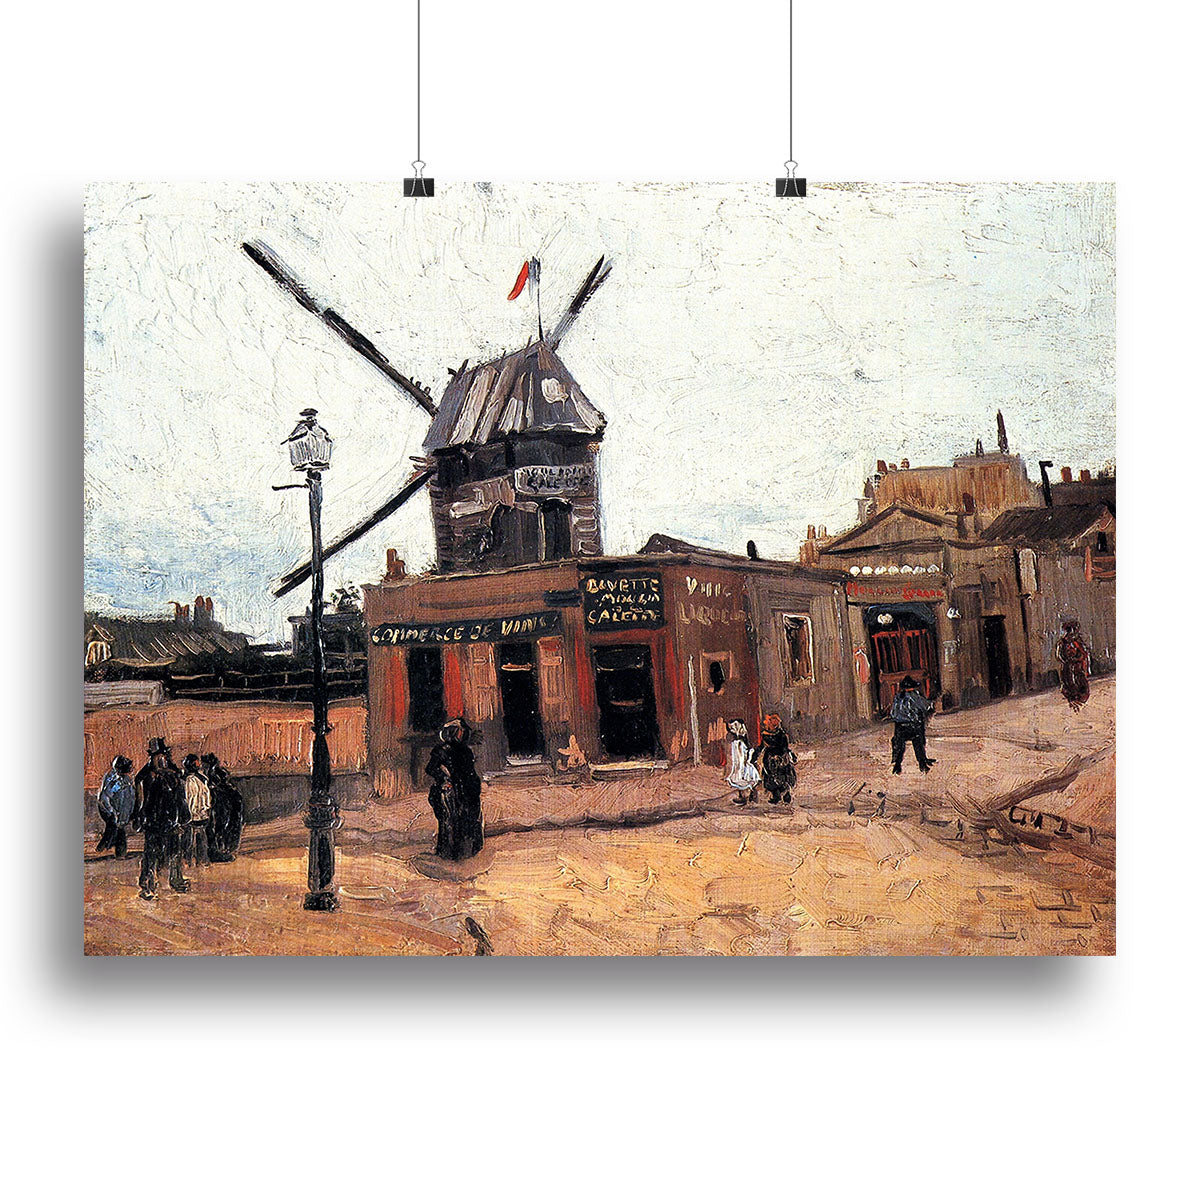 Le Moulin de la Galette 3 by Van Gogh Canvas Print or Poster - Canvas Art Rocks - 2